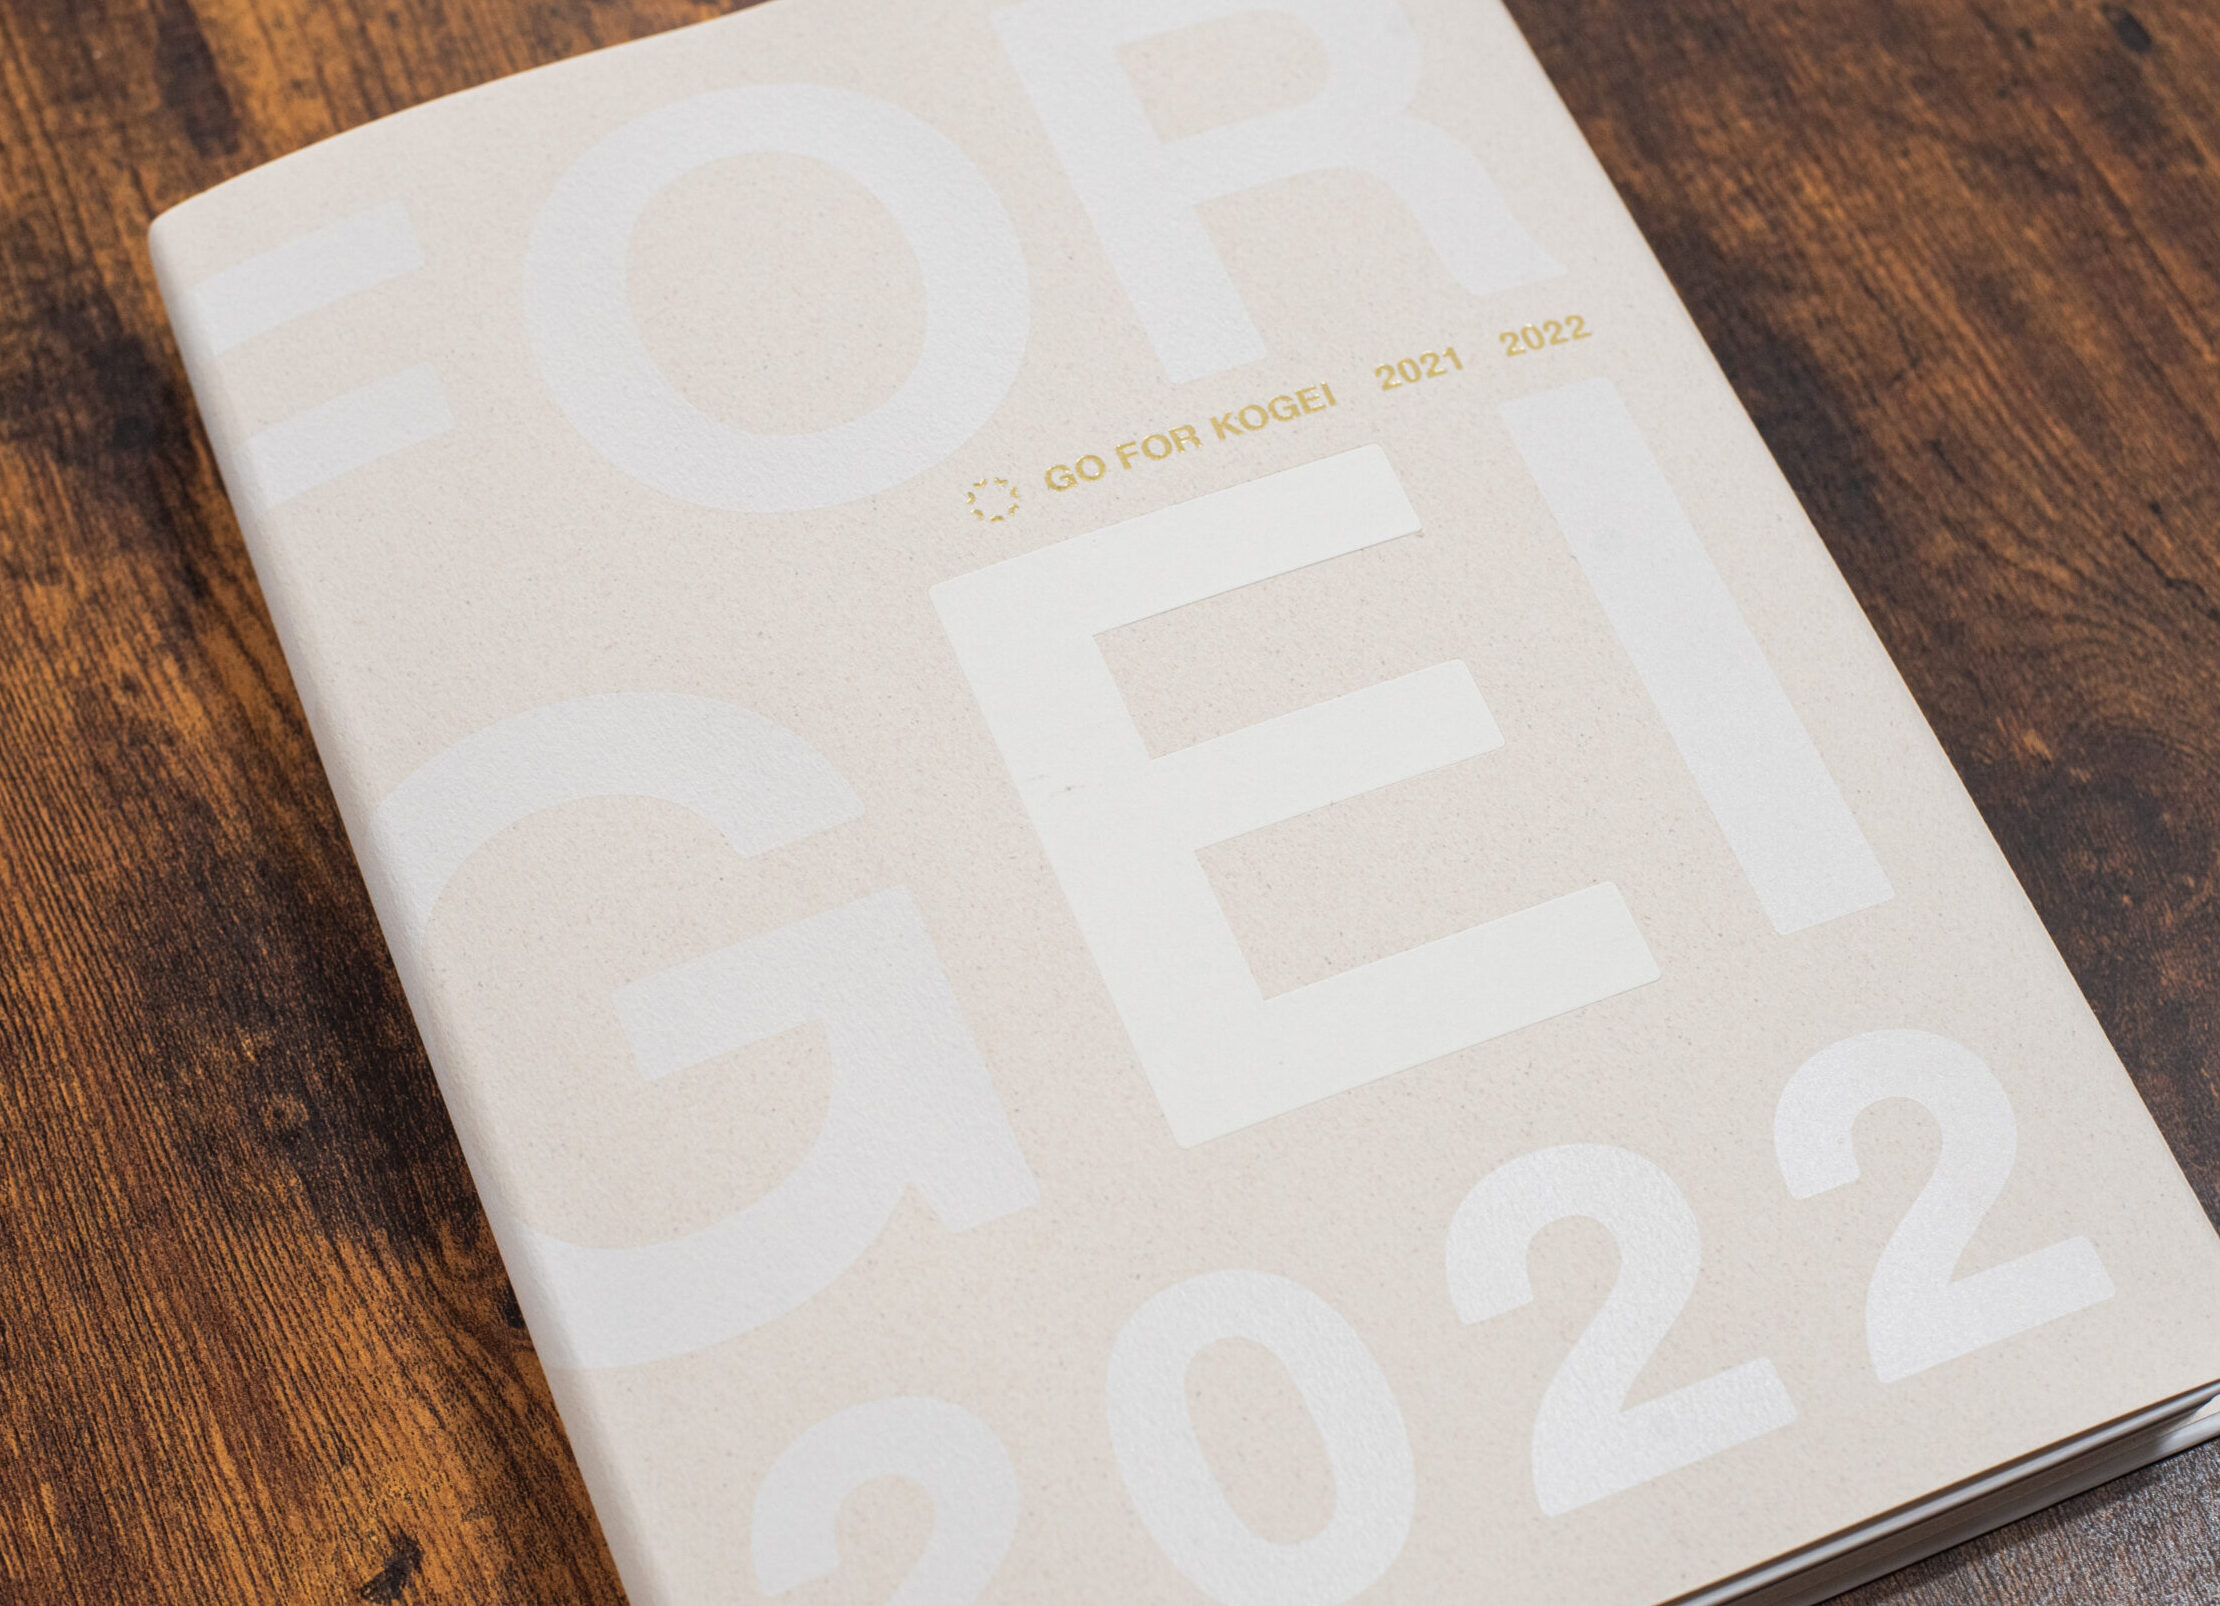 株式会社ノエチカ 様　カタログ「GO FOR KOGEI 2021-2022」